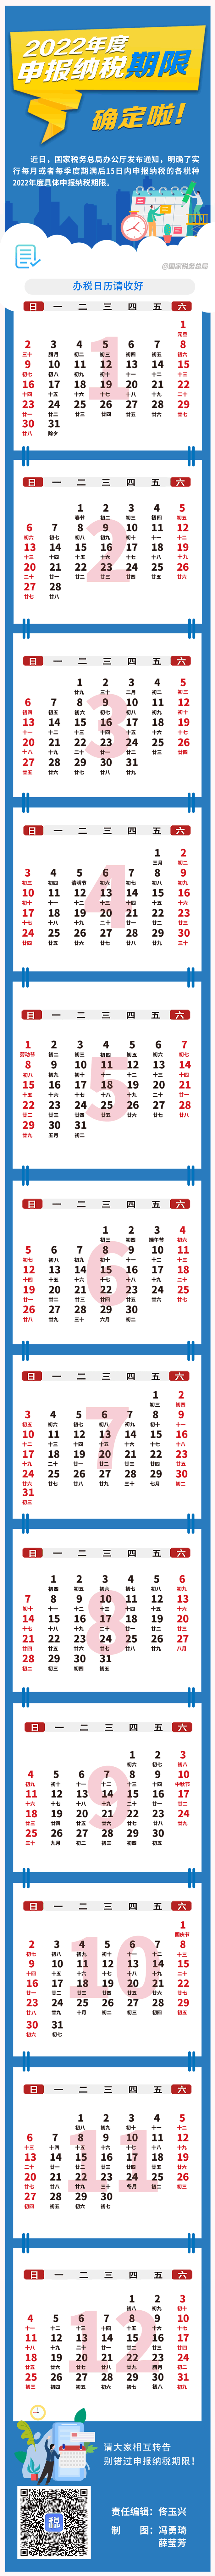 税务局办税日历